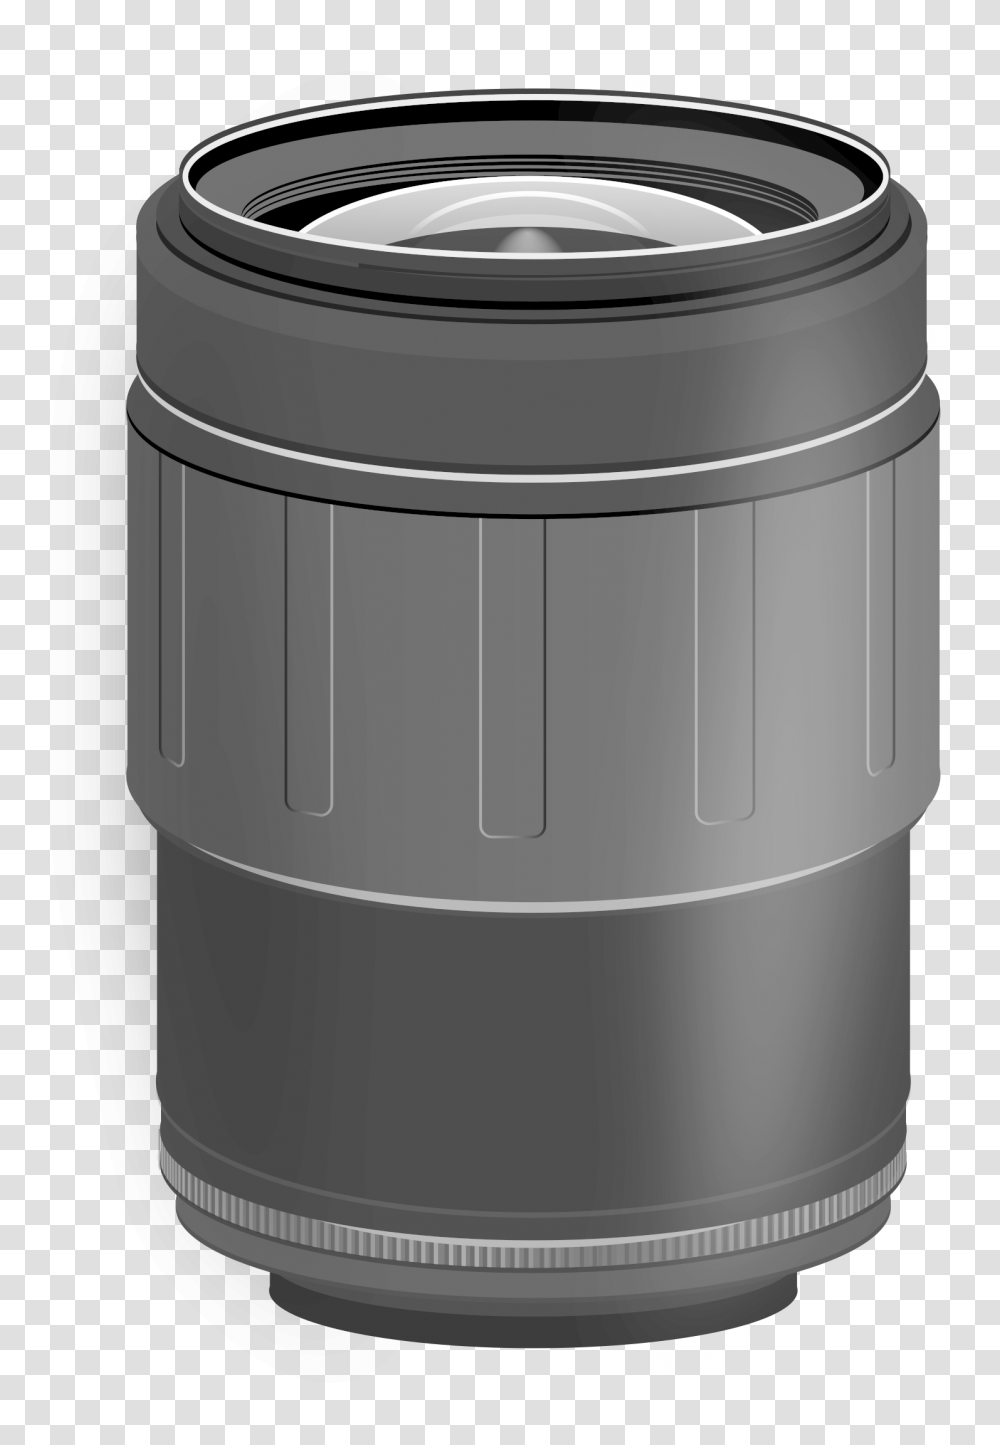 Slr Camera Lense Clip Arts, Barrel, Keg, Rain Barrel Transparent Png